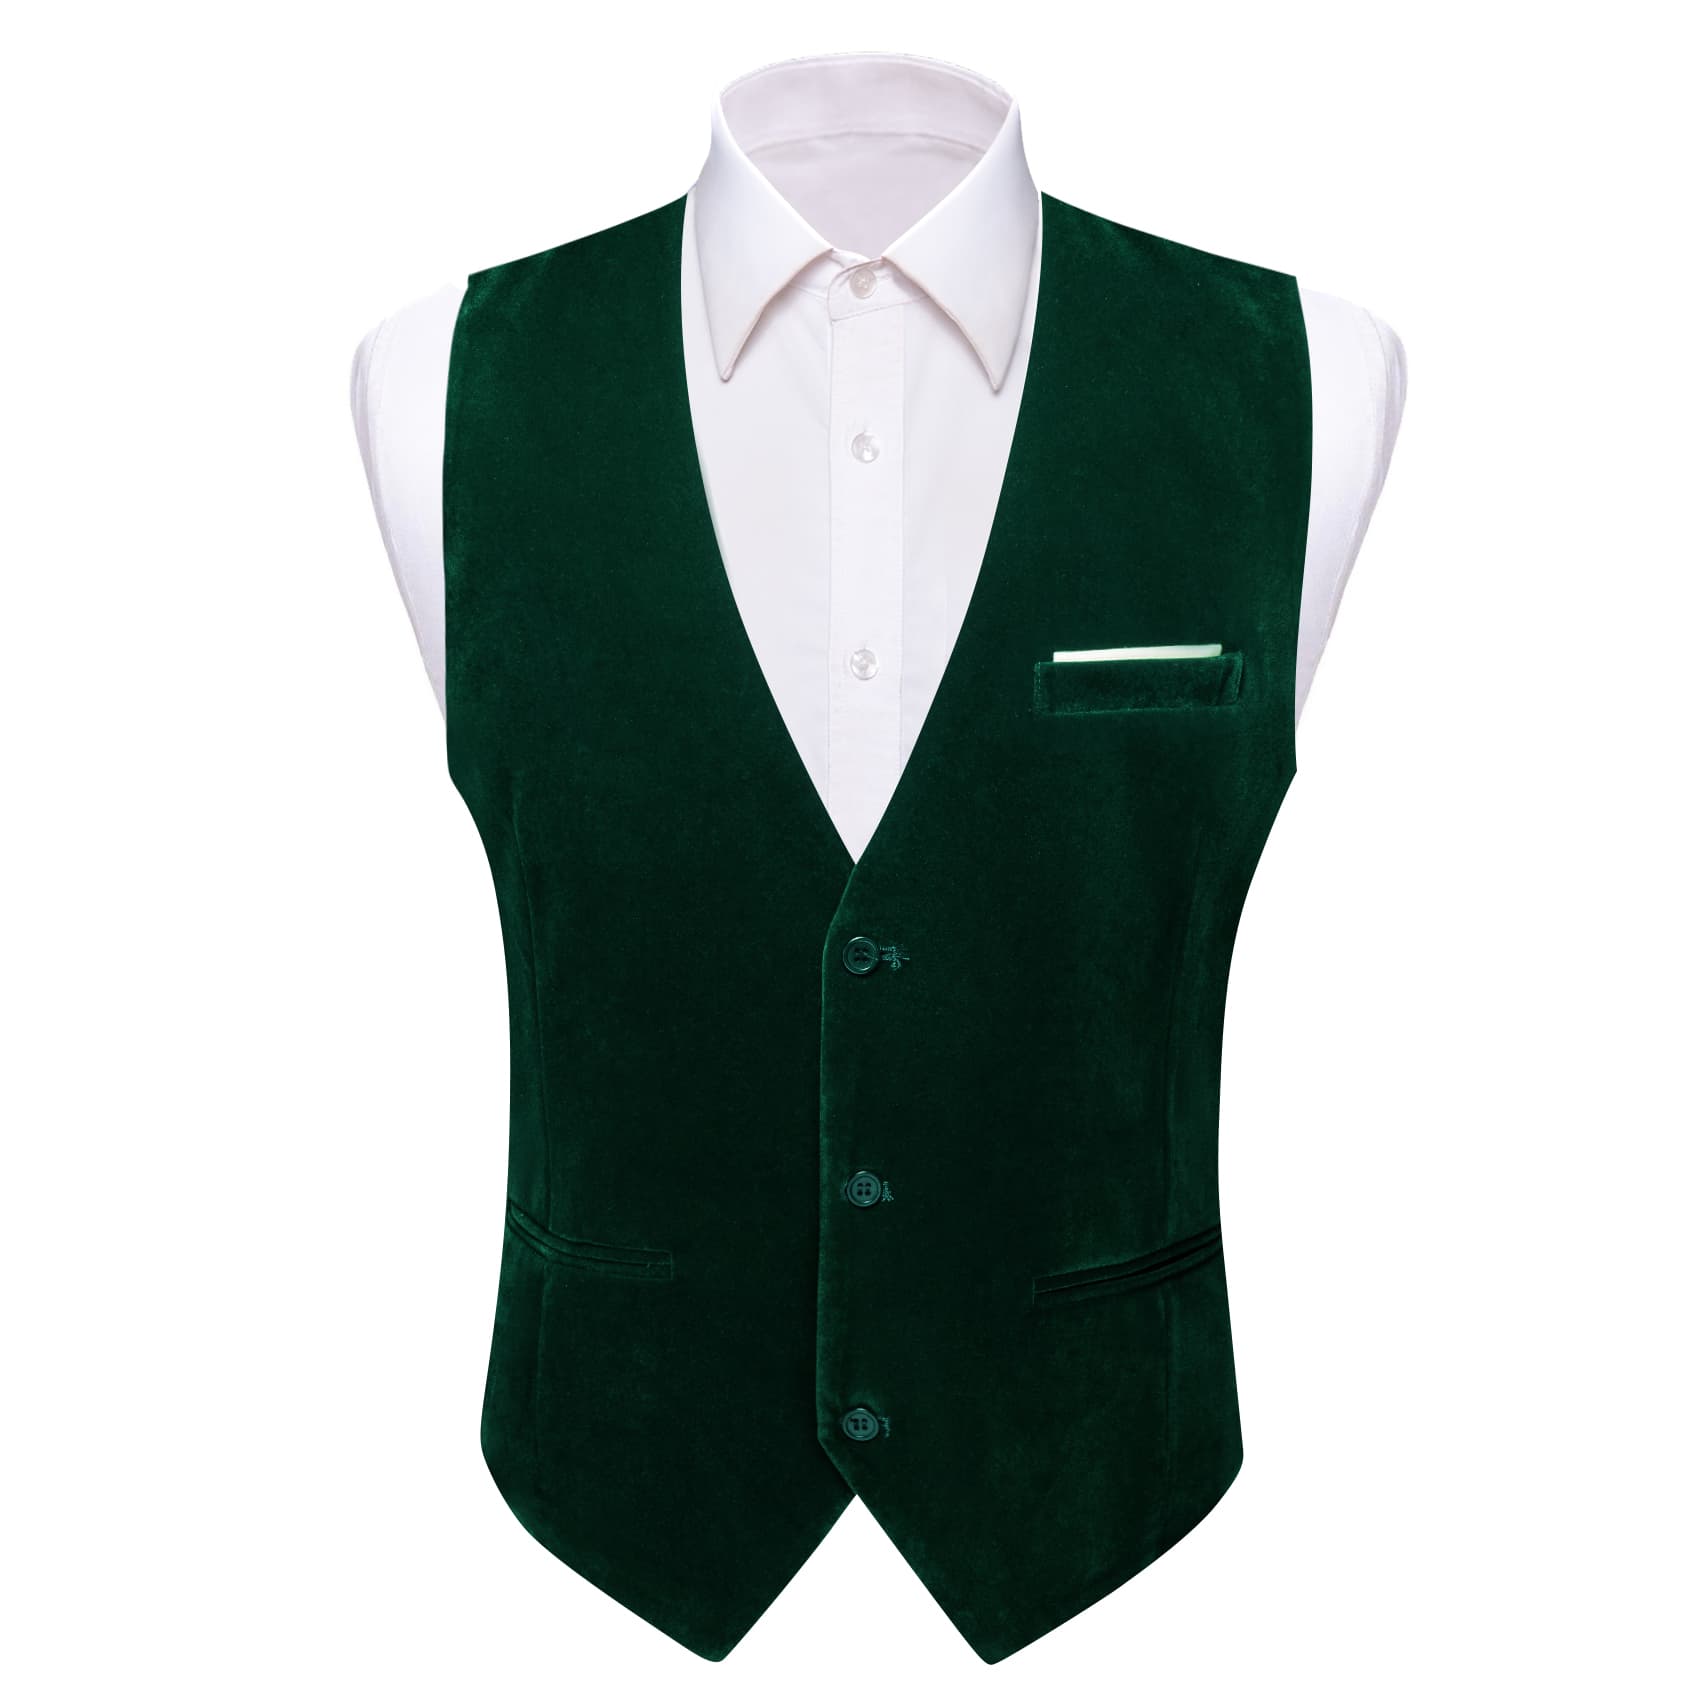 Barry Wang Waistcoat for Men Solid Sapphire Pine Green Velvet Vest